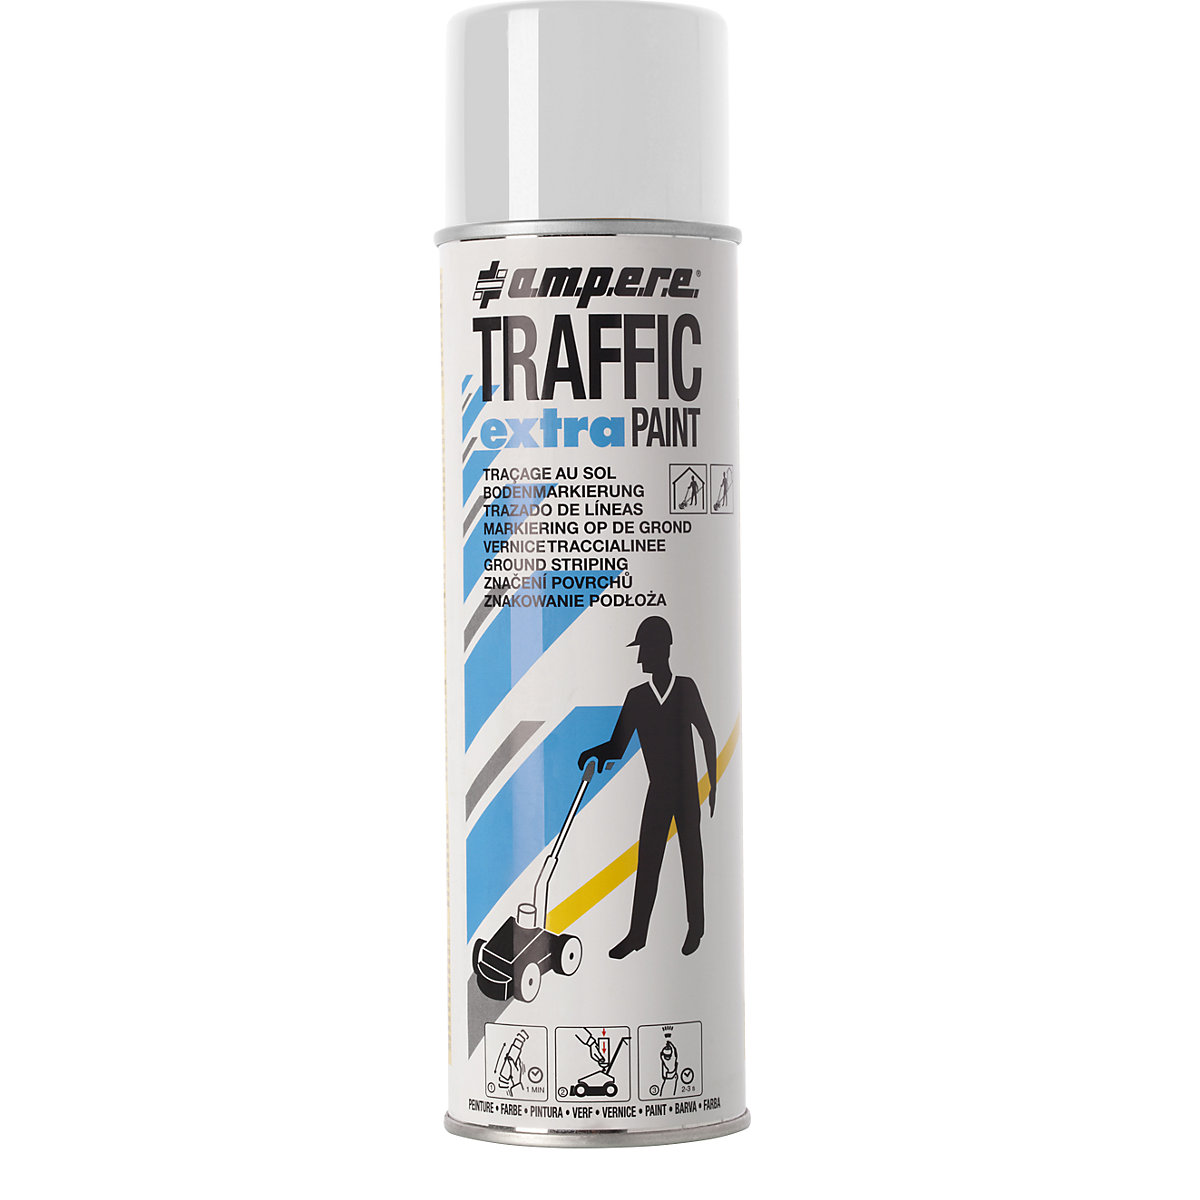 Označevalna barva Traffic extra Paint&reg; za velike obremenitve - Ampere